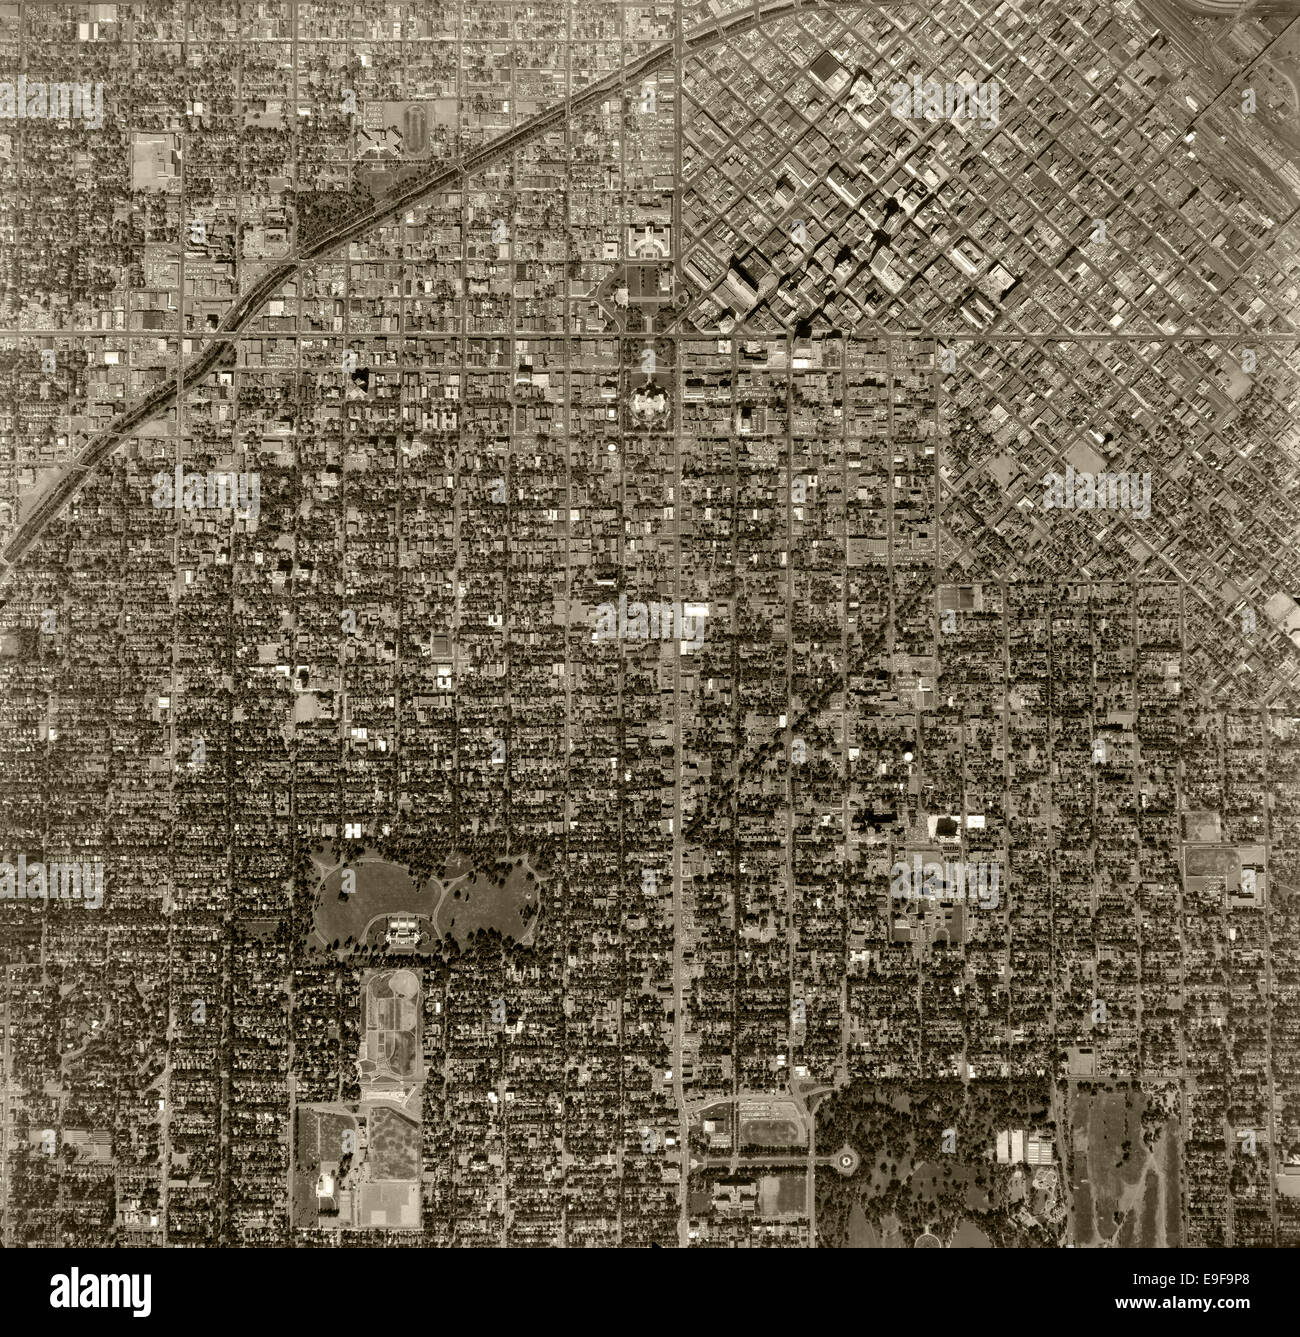 Fotografía aérea histórica de Denver, Colorado, 1963. Foto de stock